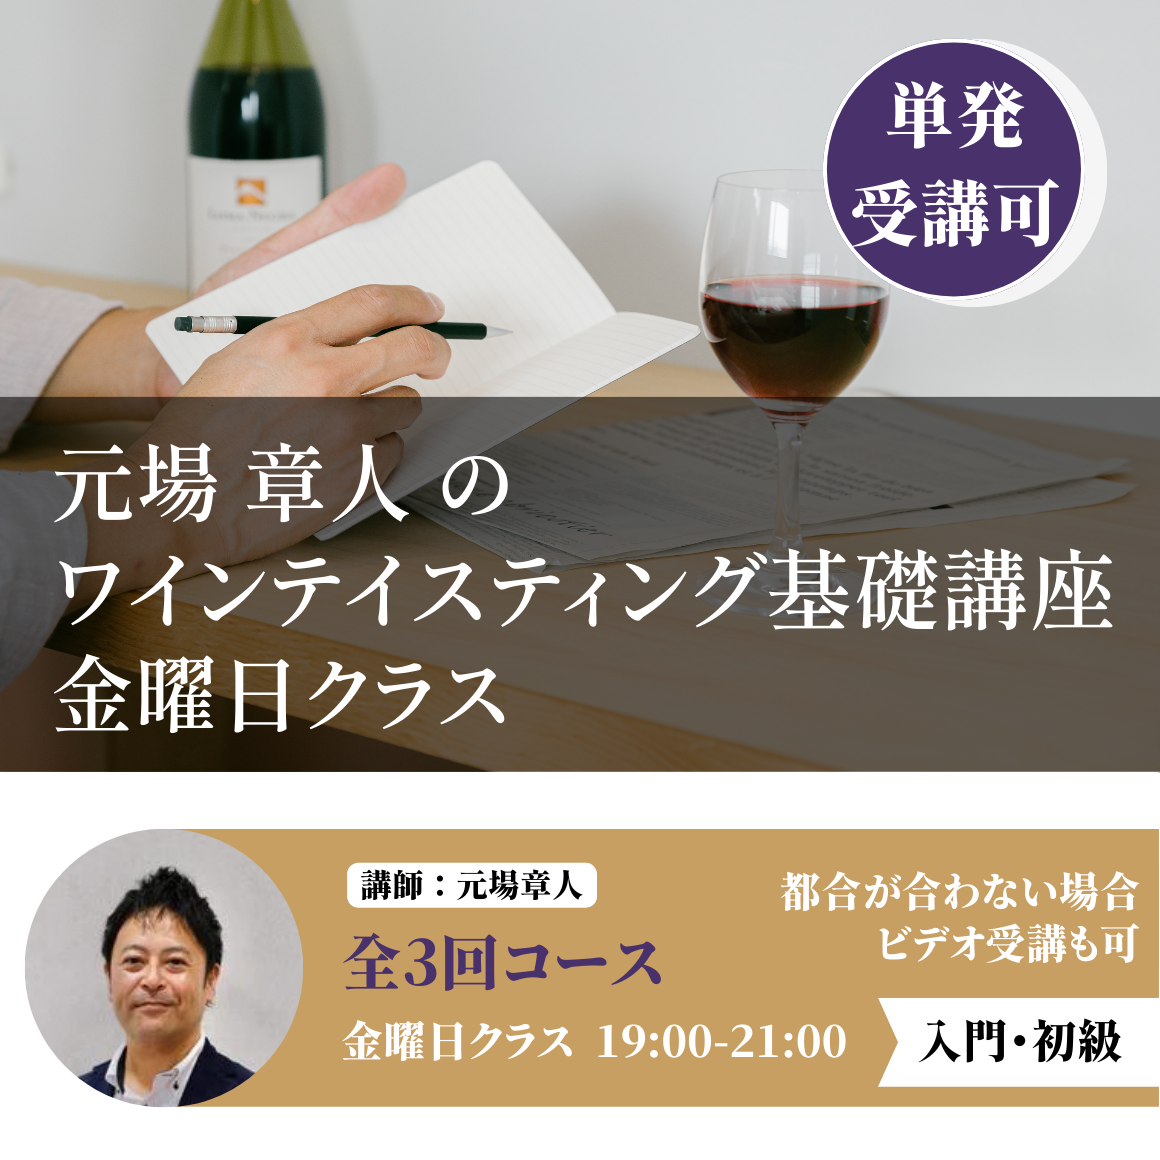 【金曜日】元場章人のワインテイスティング基礎講座